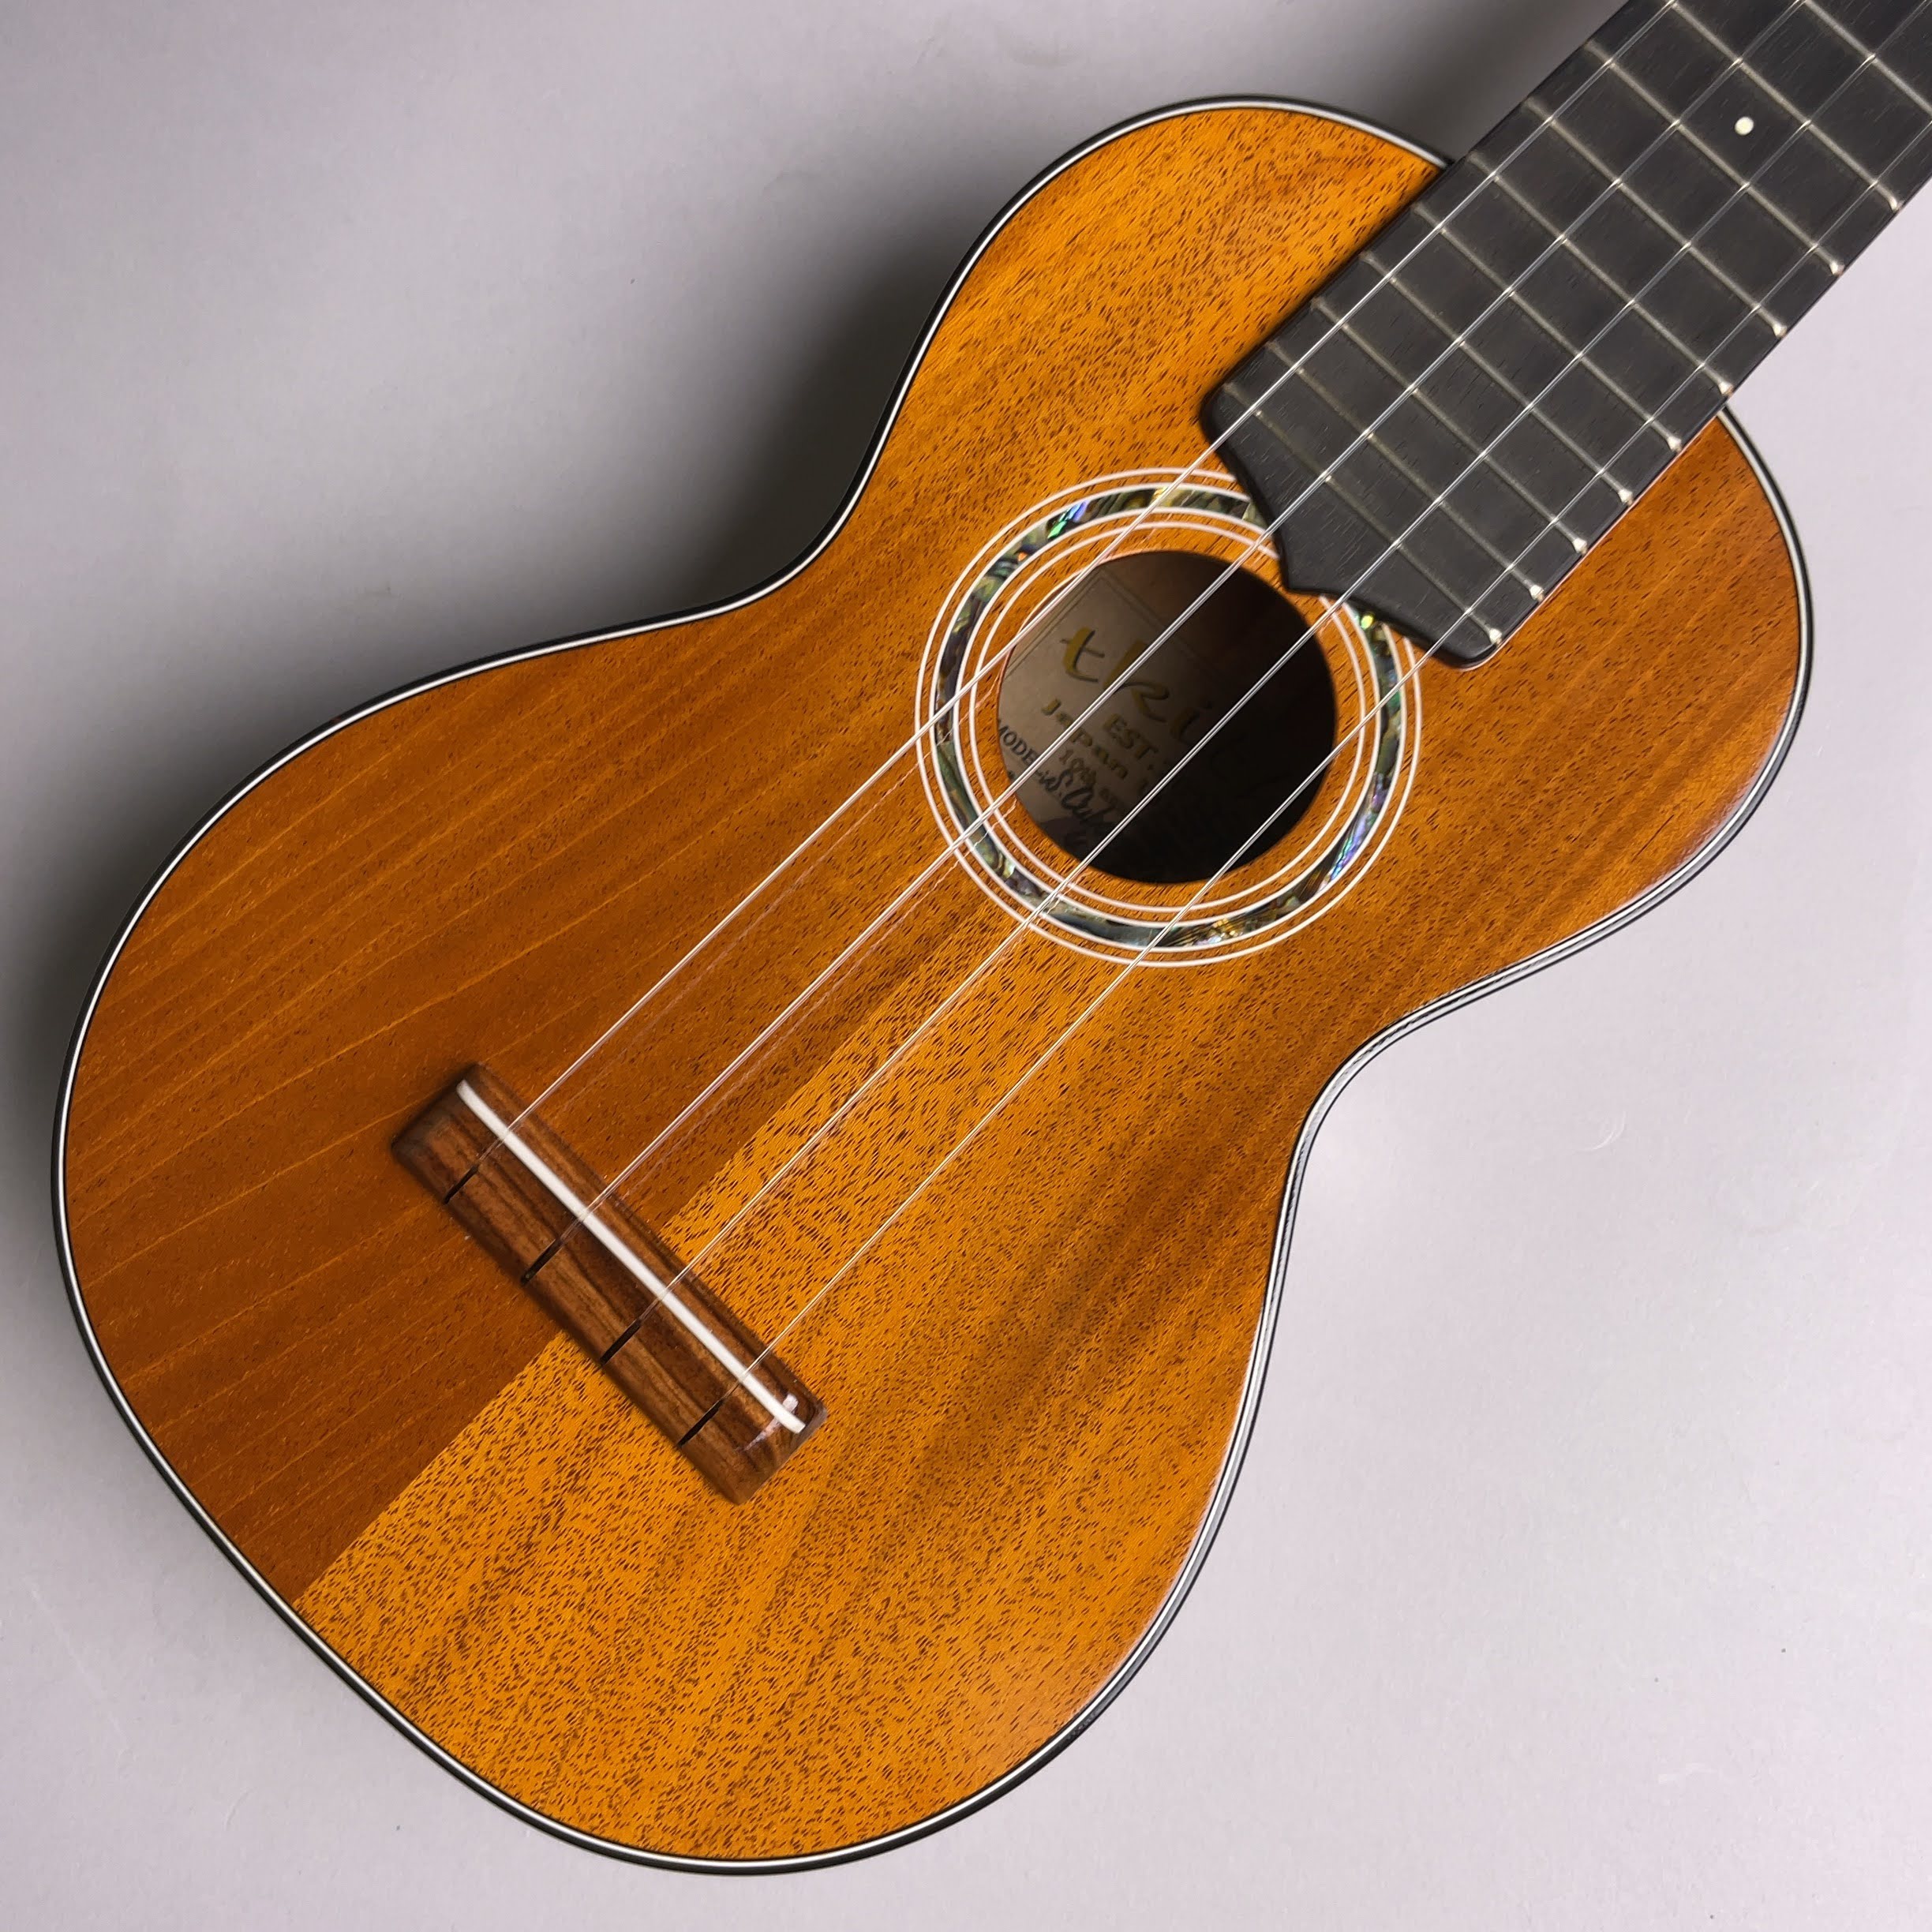 ウクレレ商品情報 【試奏動画あり】| tkitki ukulele S.Cuban Mahogany SOP